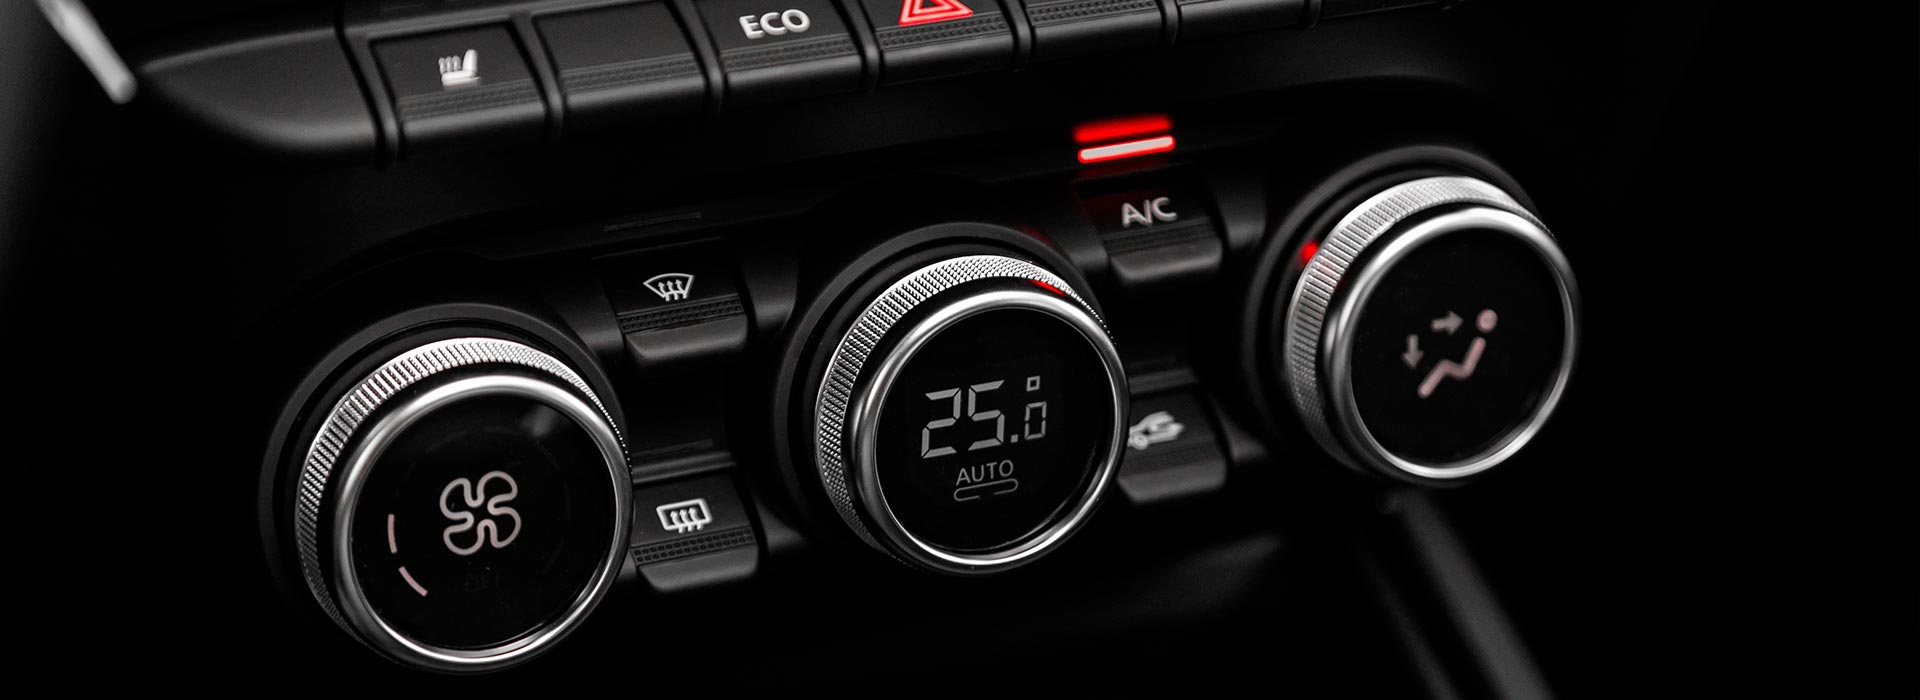 Servis Volvo vozila | Servisiranje klima uređaja